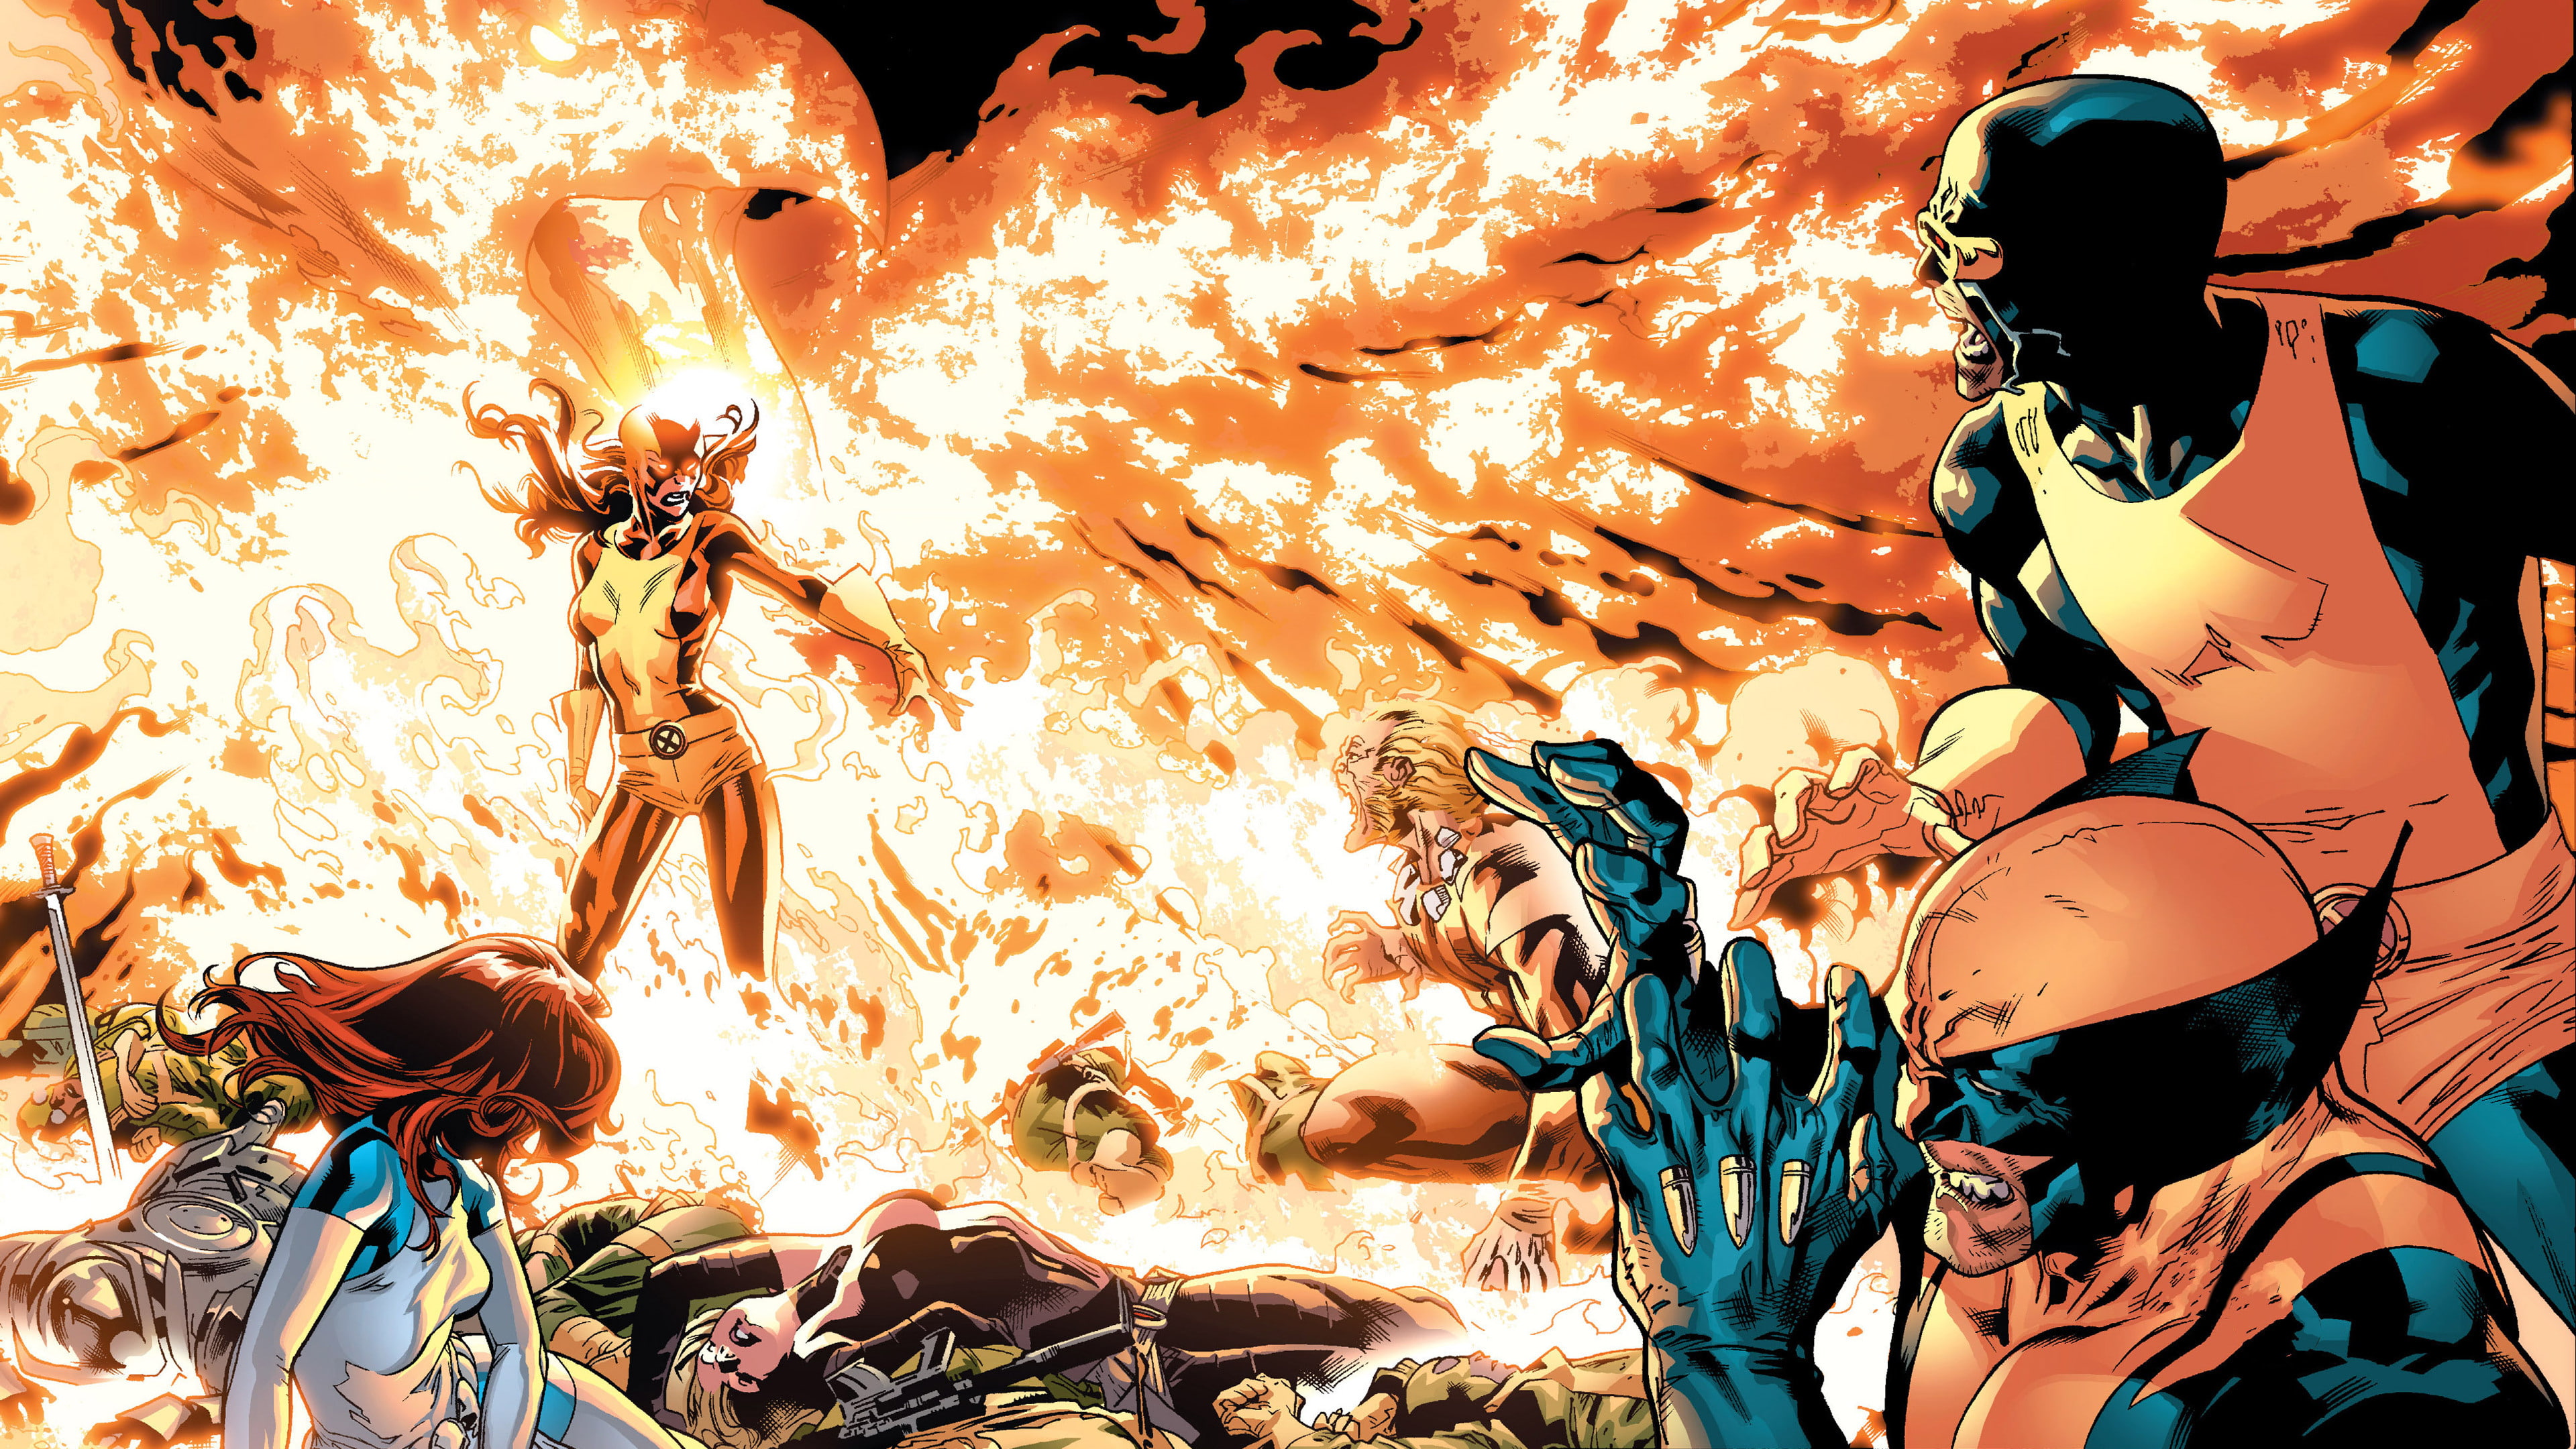 battle, Wolverine, X-Men, Marvel Comics, Cyclops, Dark Phoenix